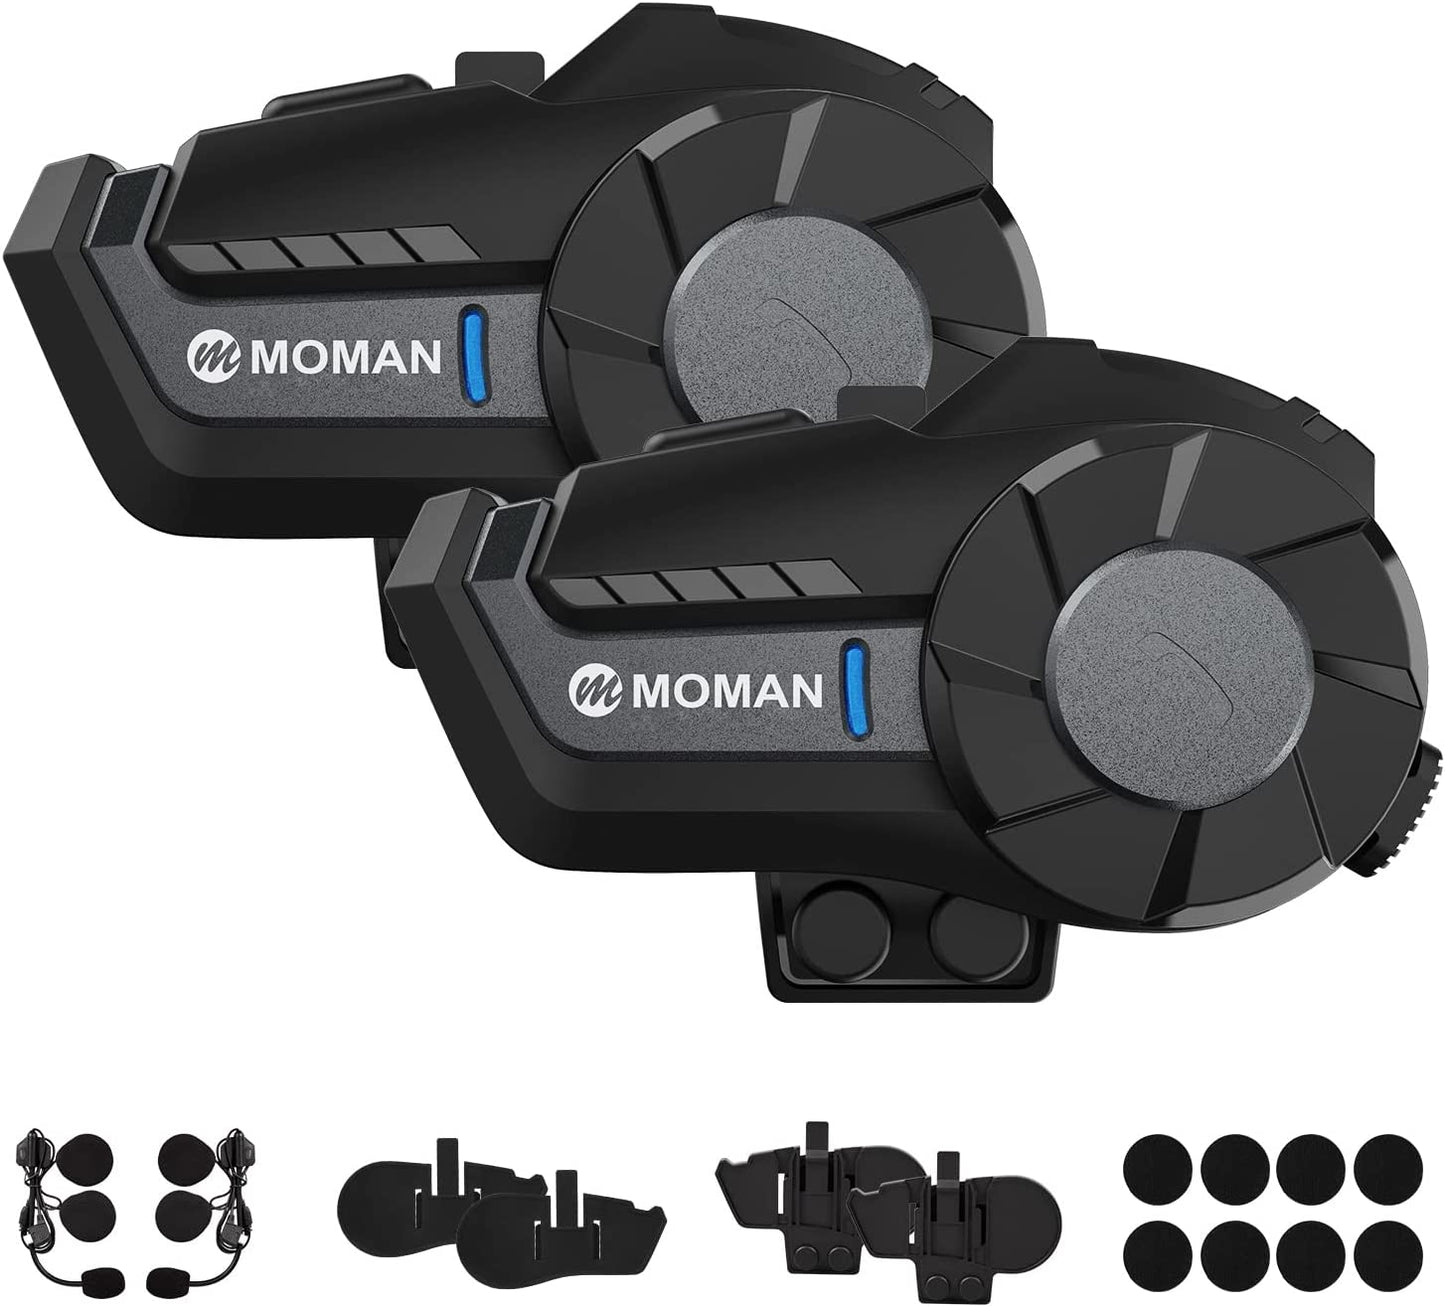 Moman Motorcycle Intercom, H2 Bluetooth Motorcycle Helmet Headset